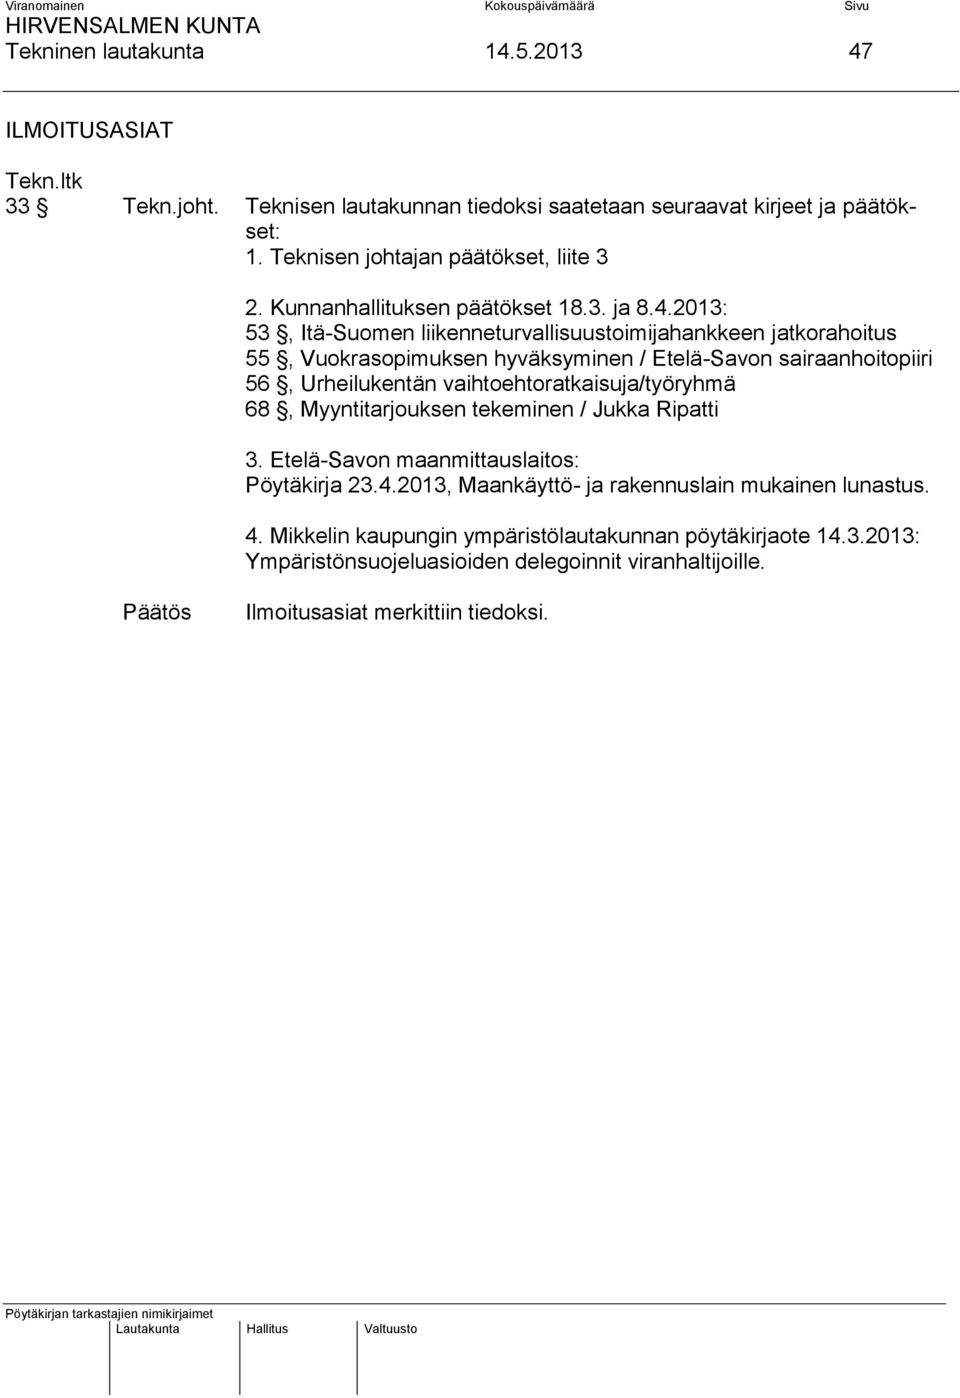 2013: 53, Itä-Suomen liikenneturvallisuustoimijahankkeen jatkorahoitus 55, Vuokrasopimuksen hyväksyminen / Etelä-Savon sairaanhoitopiiri 56, Urheilukentän